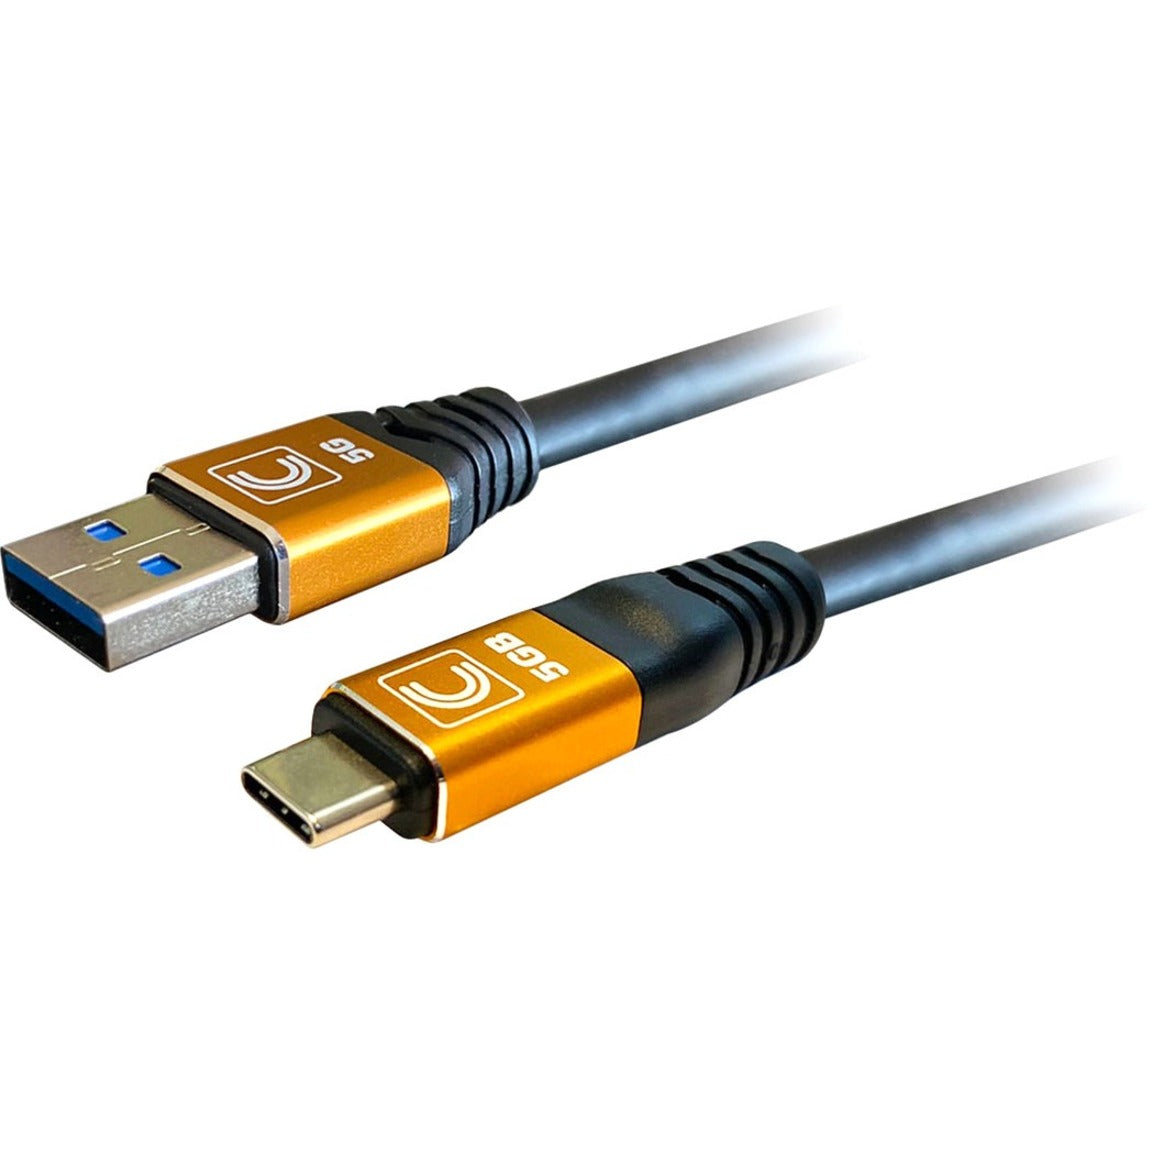 كابل USB3-AC-15SP Pro AV/IT خاصية سلسلة اختصاصي USB 3.0 (3.2 جنرال1) 5G نوع A ذكر إلى نوع C ذكر 15 قدمًا، إغاثة التوتر، قابل للانحناء، مع ثلاث طبقات درع العلامة التجارية:  Comprehensive